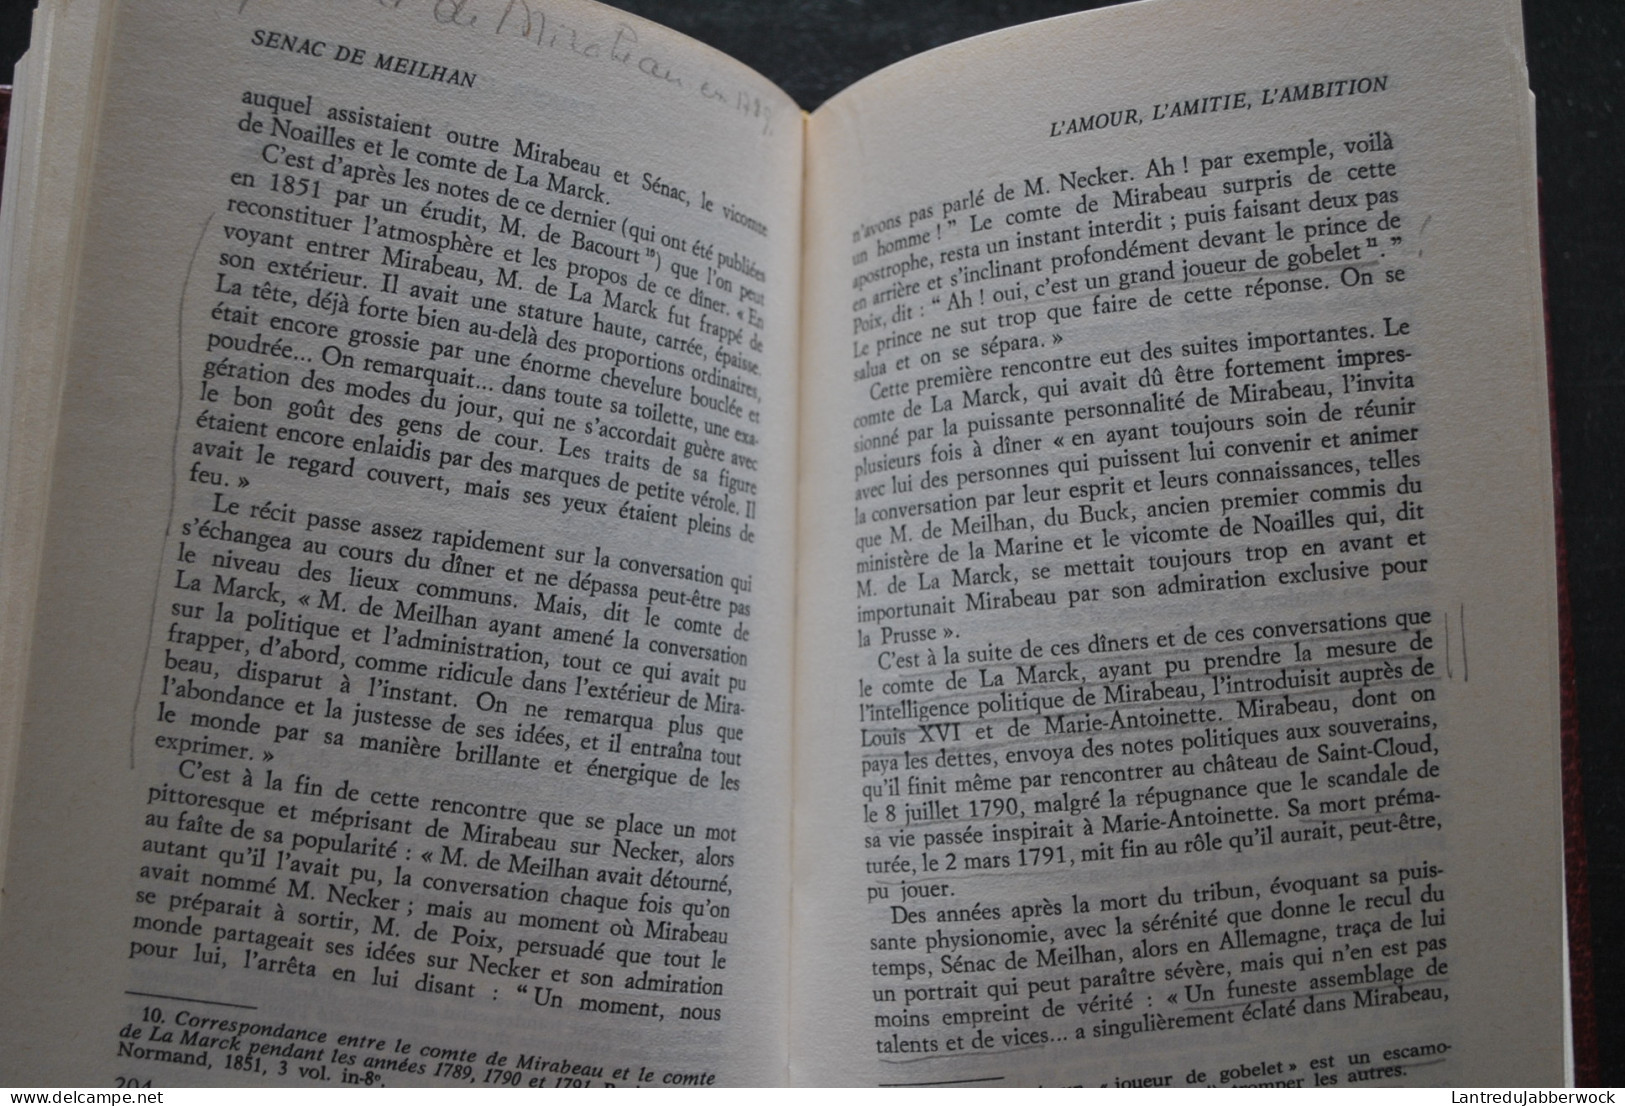 Pierre ESCOUBE Sénac De Meilhan Librairie Académique Perrin 1984 De La France De Louis XV à L'Europe Des émigrés - Geschichte